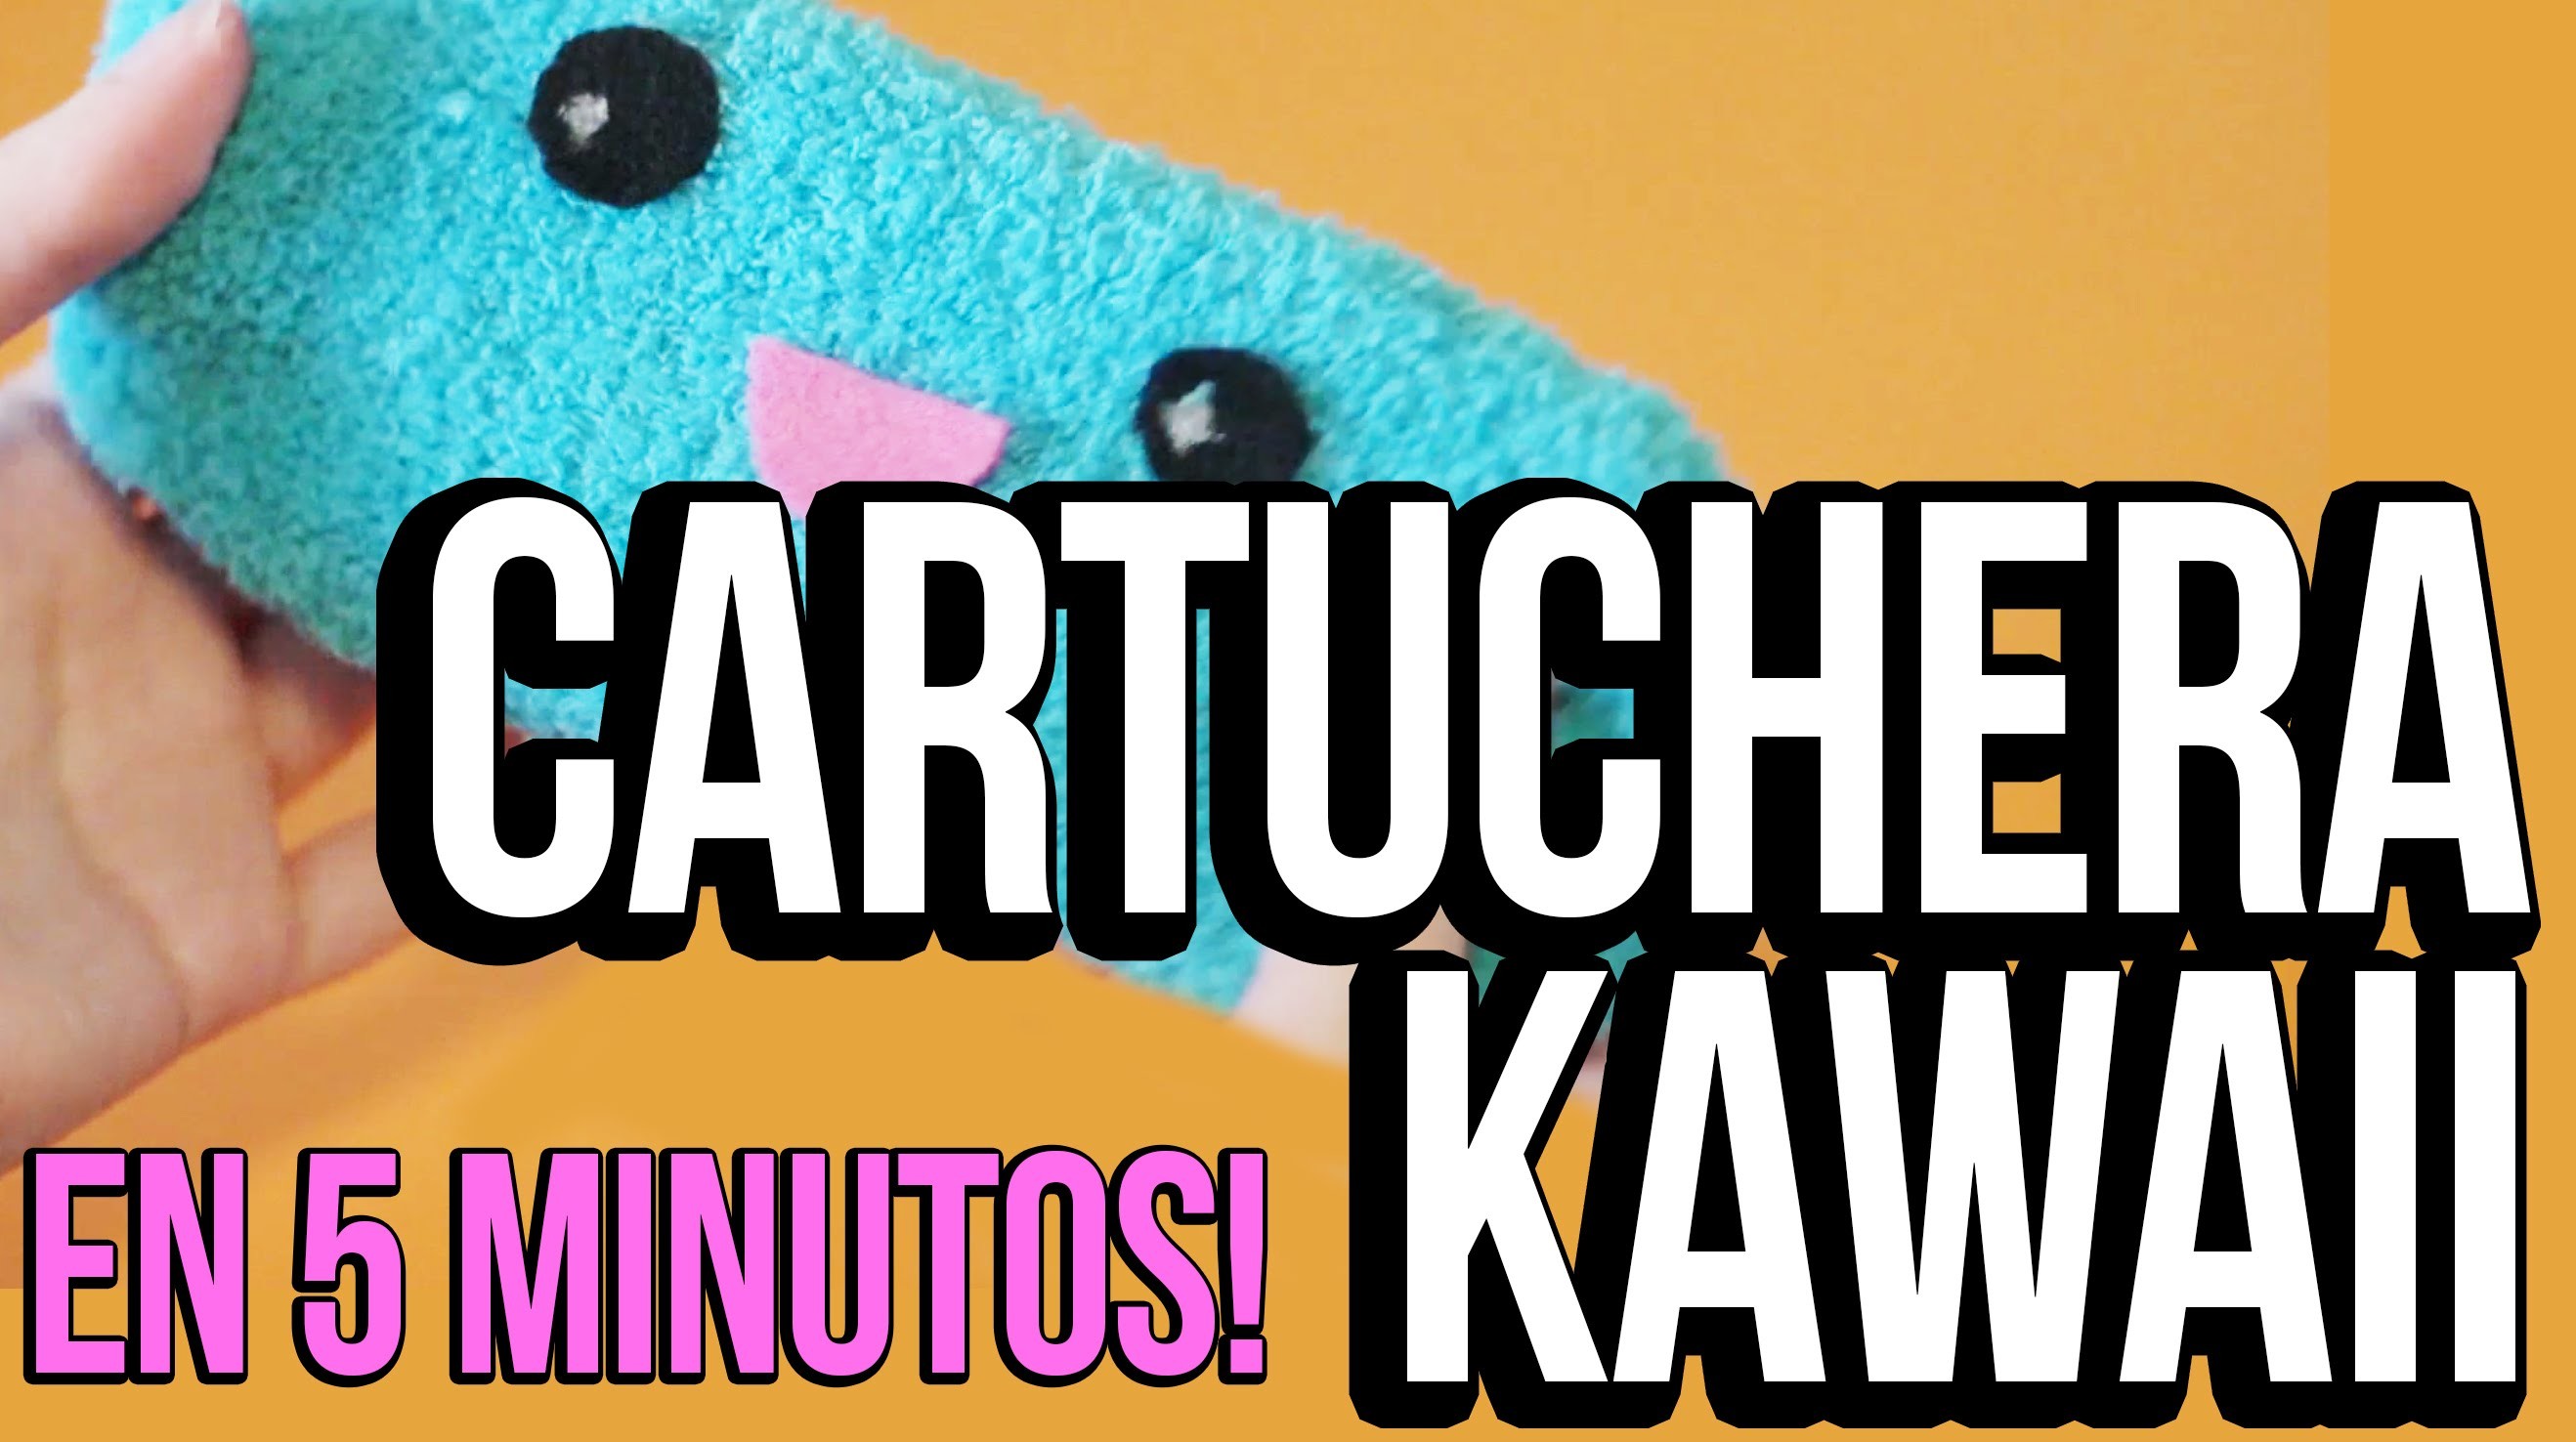 Cómo hacer una cartuchera Kawaii - EN MENOS DE 5 MINUTOS!!!